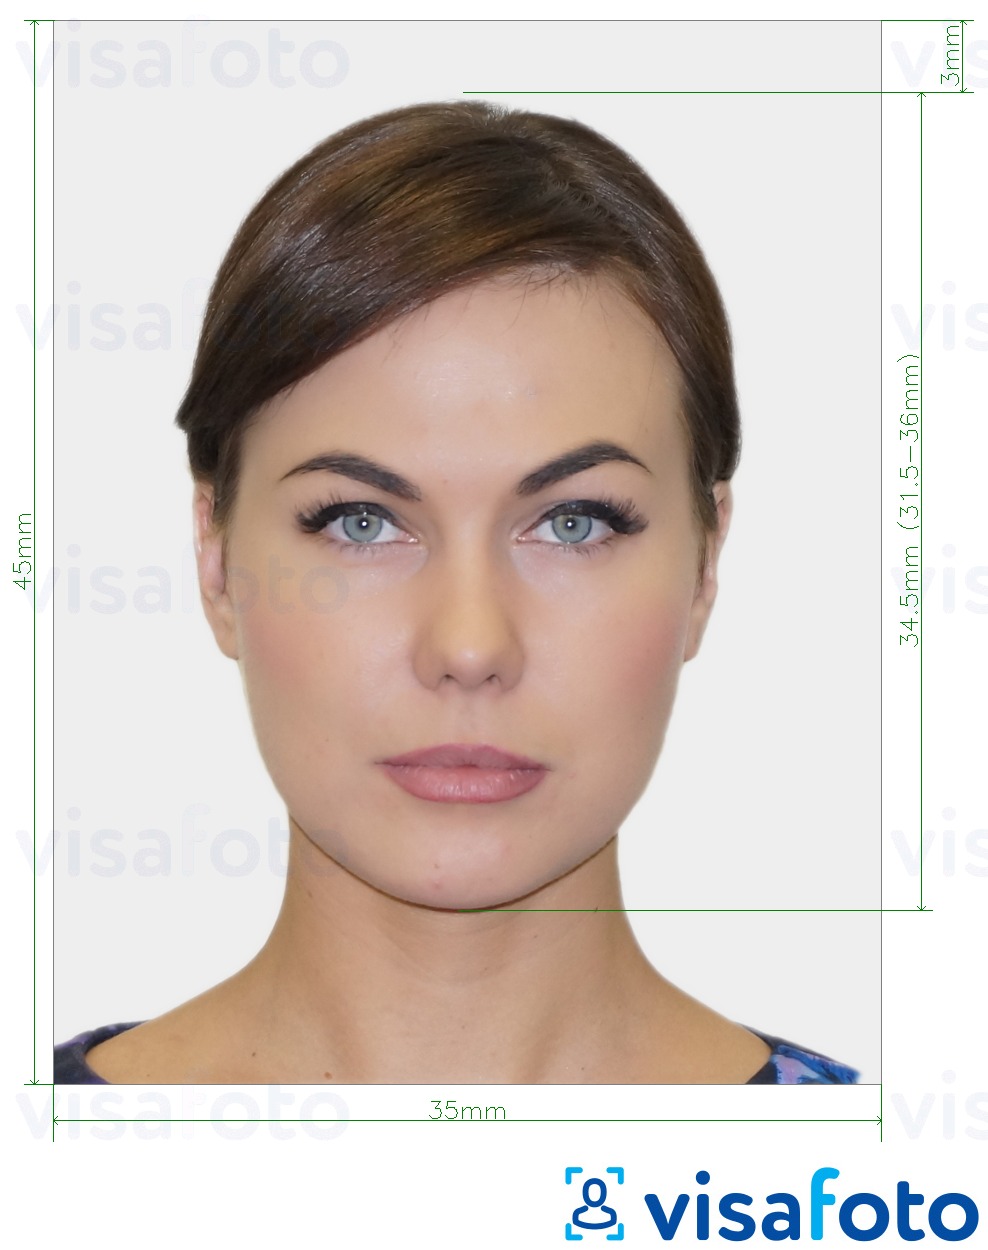 Ejemplo de foto para Tarjeta de identidad de Francia 35x45 mm (3,5x4,5 cm) con la especificación del tamaño exacto